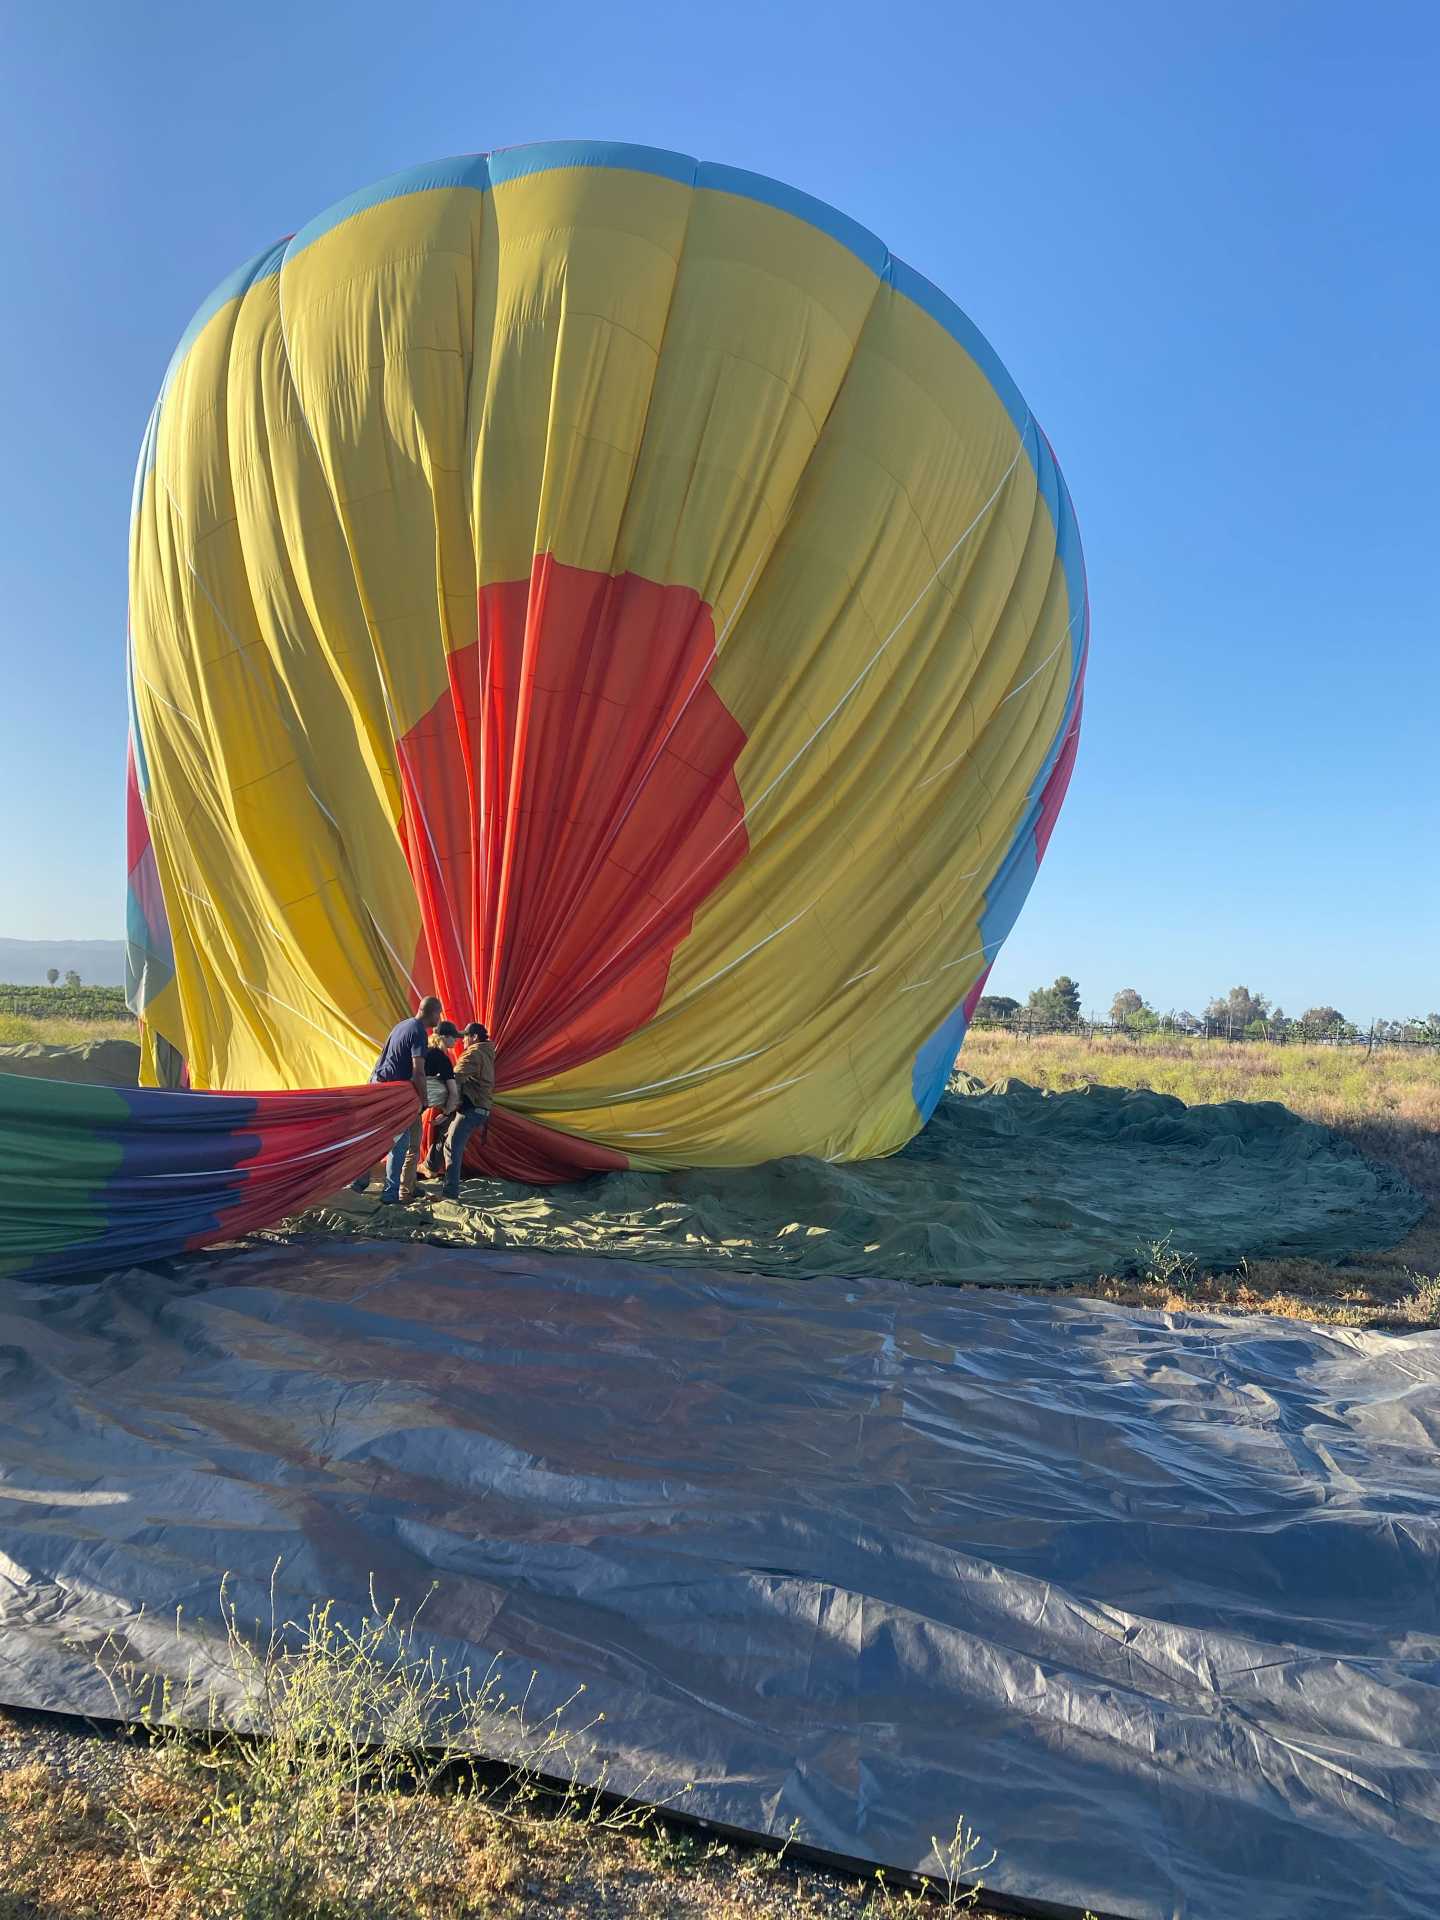 The California Dreamin' team takes down a hot air balloon in Temecula